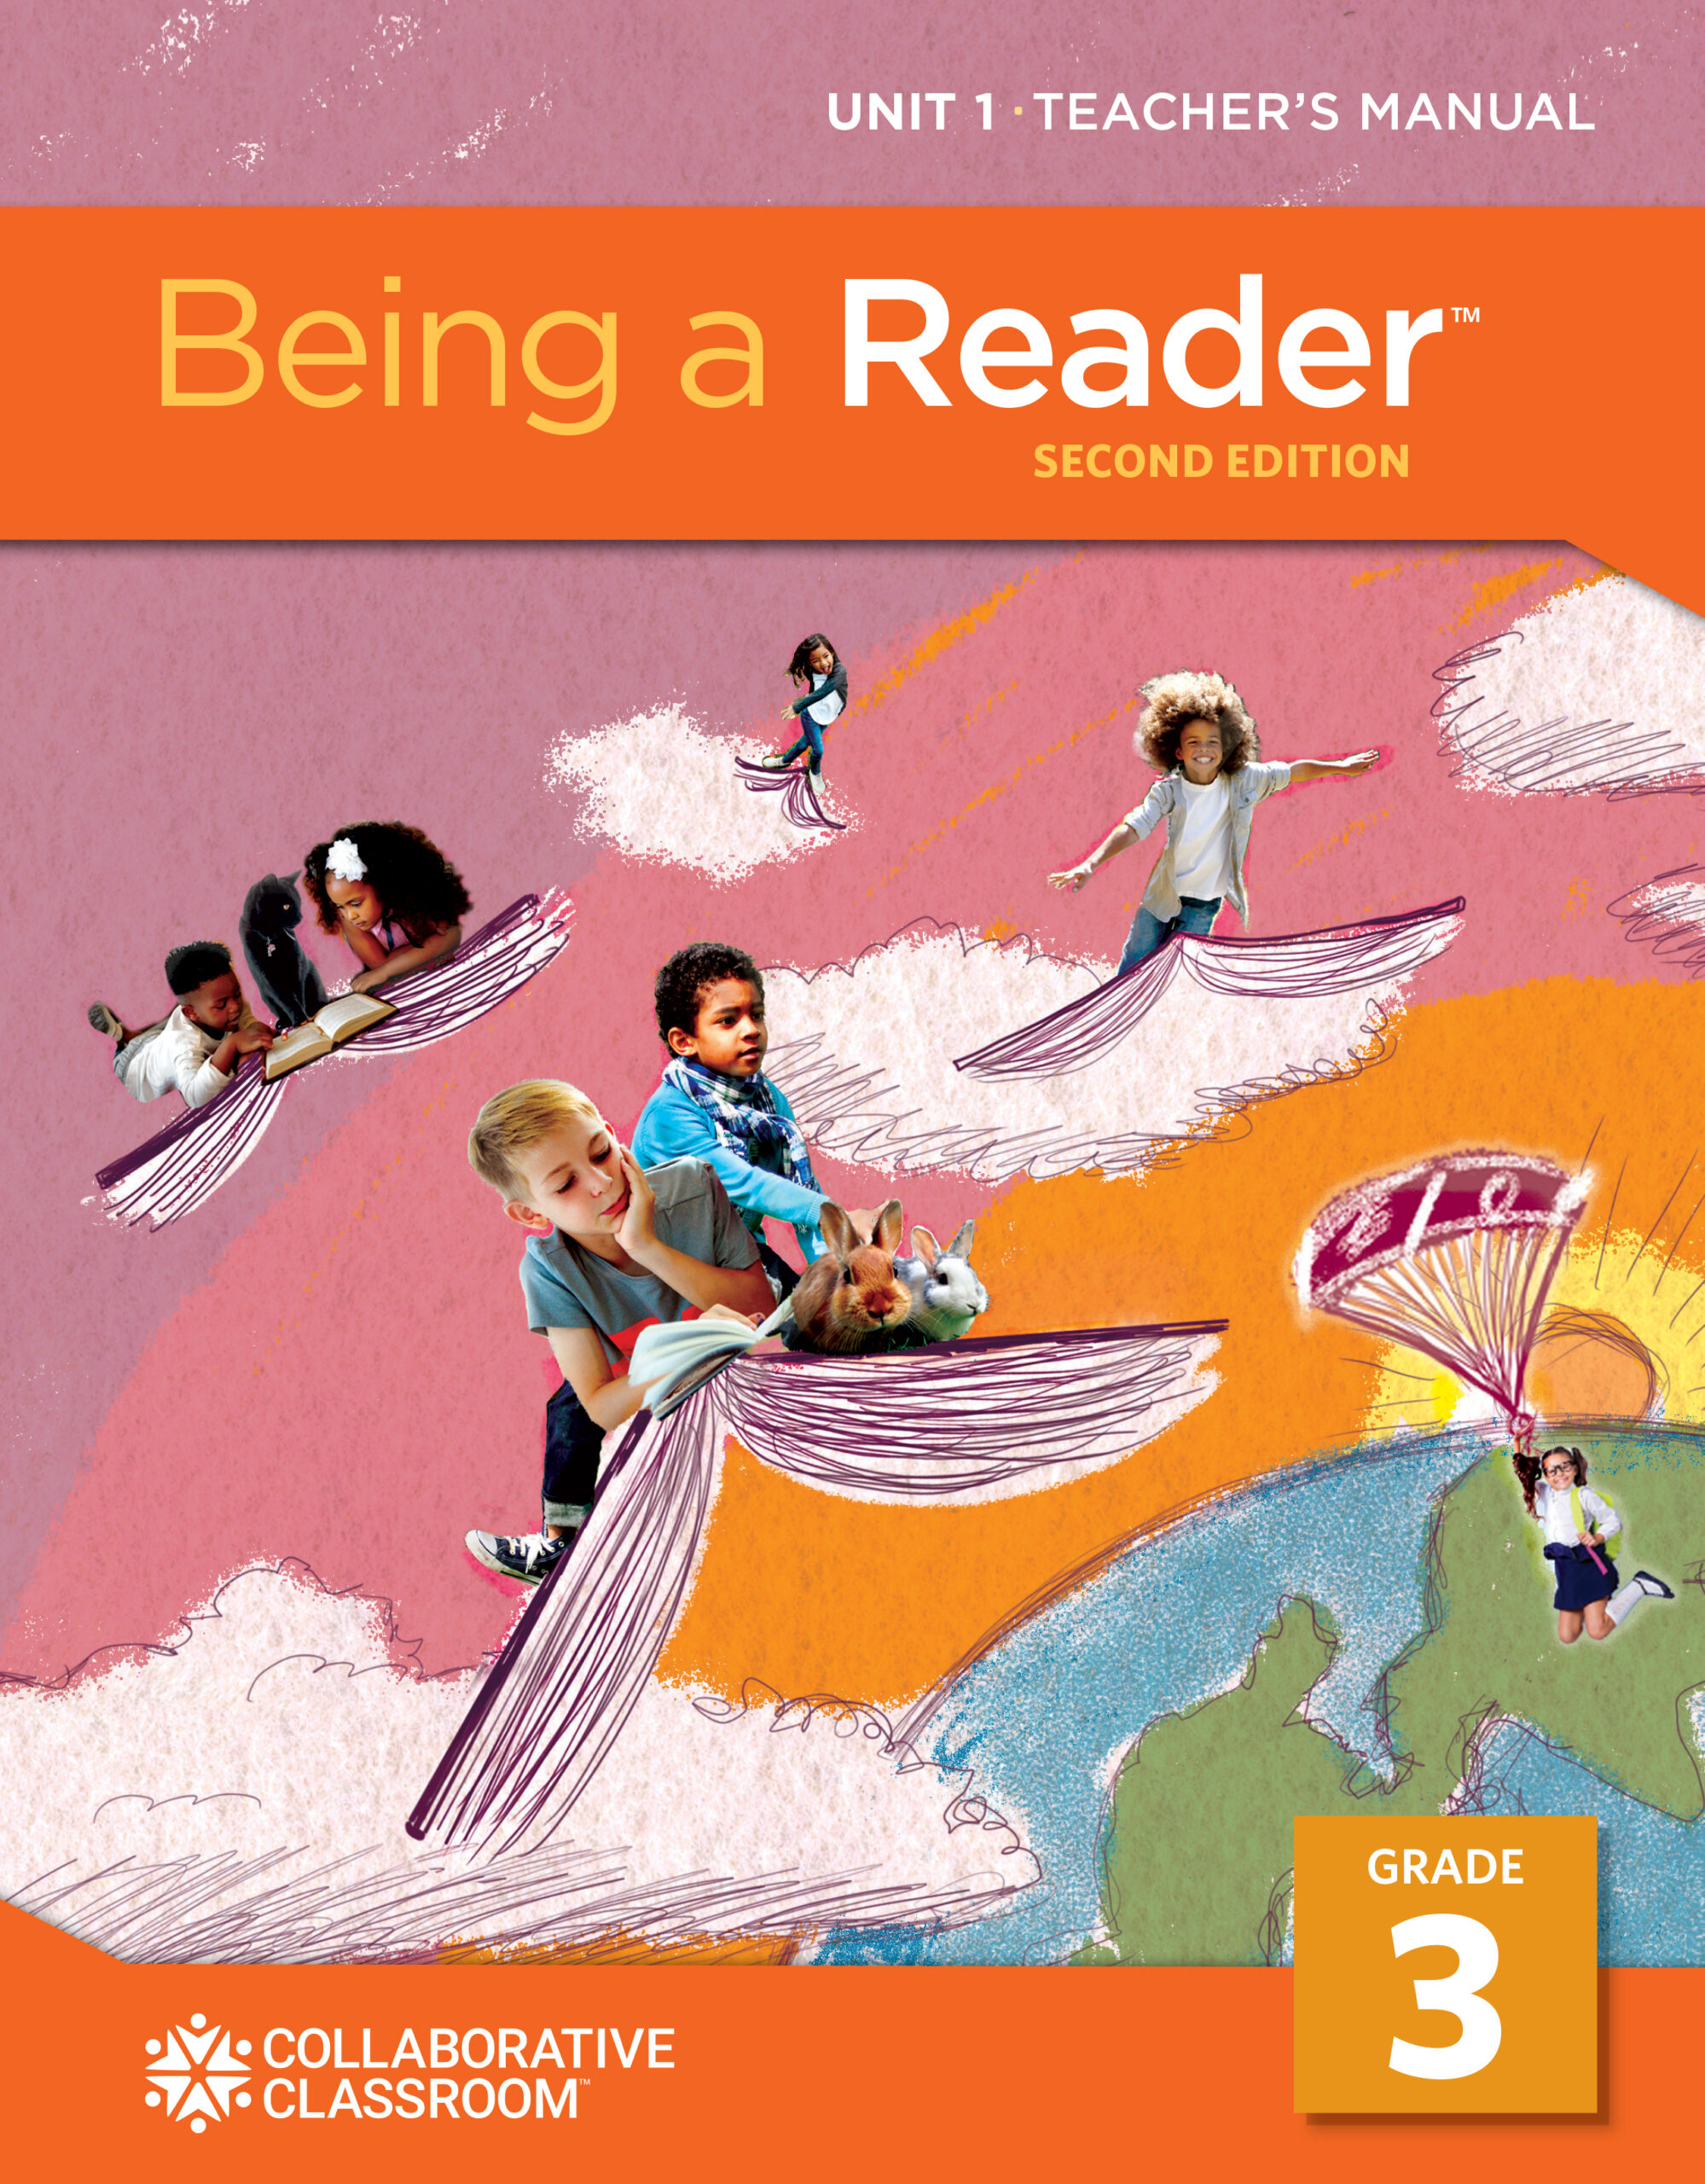 Being a Reader Grade 3 teacher's manual